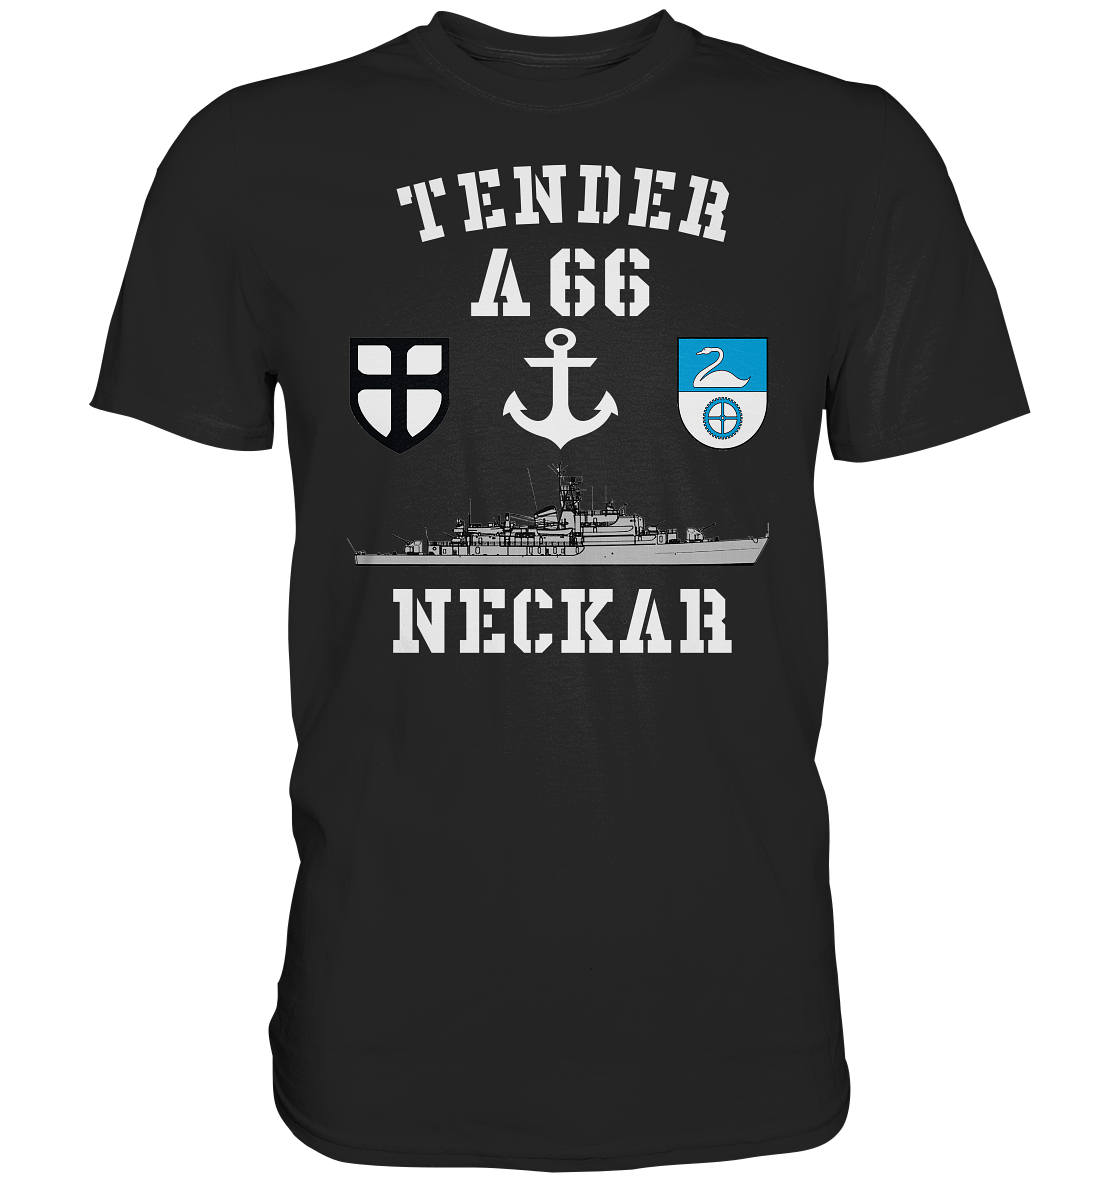 Tender A66 NECKAR 7.SG ANKER - Premium Shirt